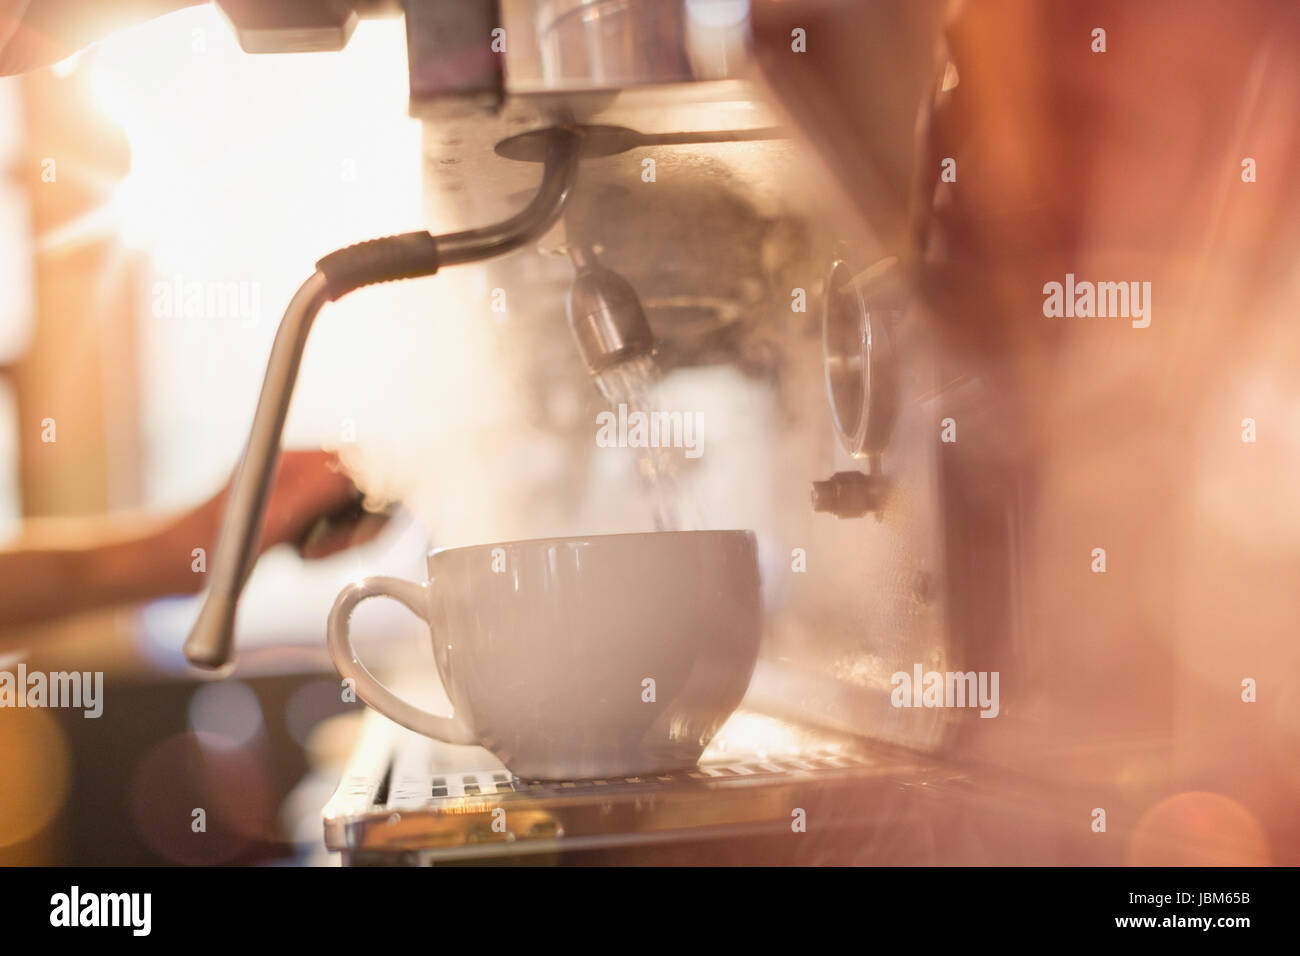 Cerca de llenado de la máquina espresso Café taza con agua caliente Foto de stock